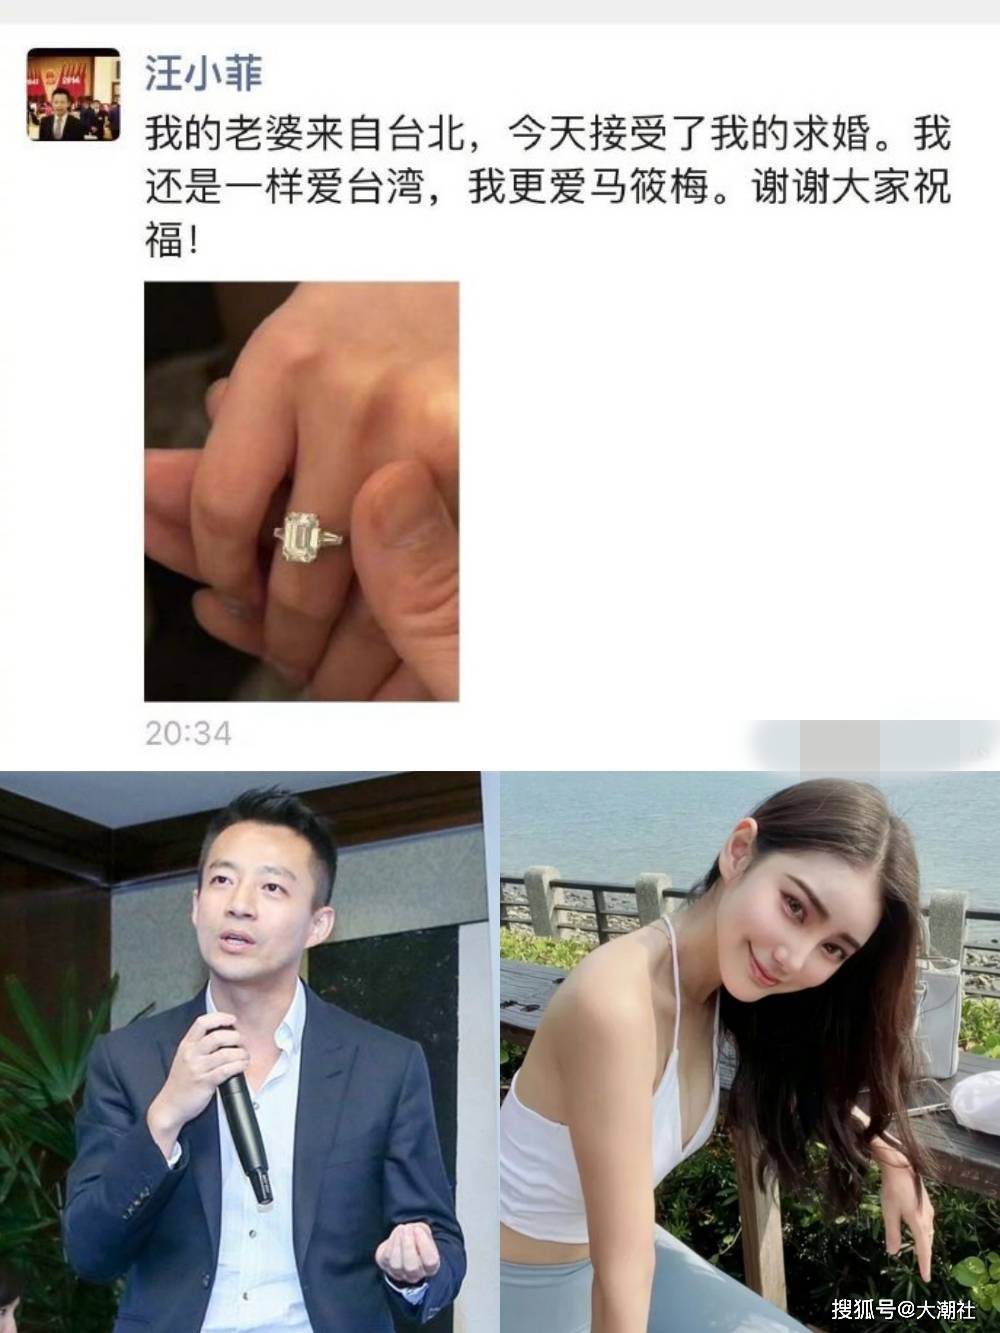 汪小菲高调晒钻戒向新女友求婚成功我的老婆来自台北